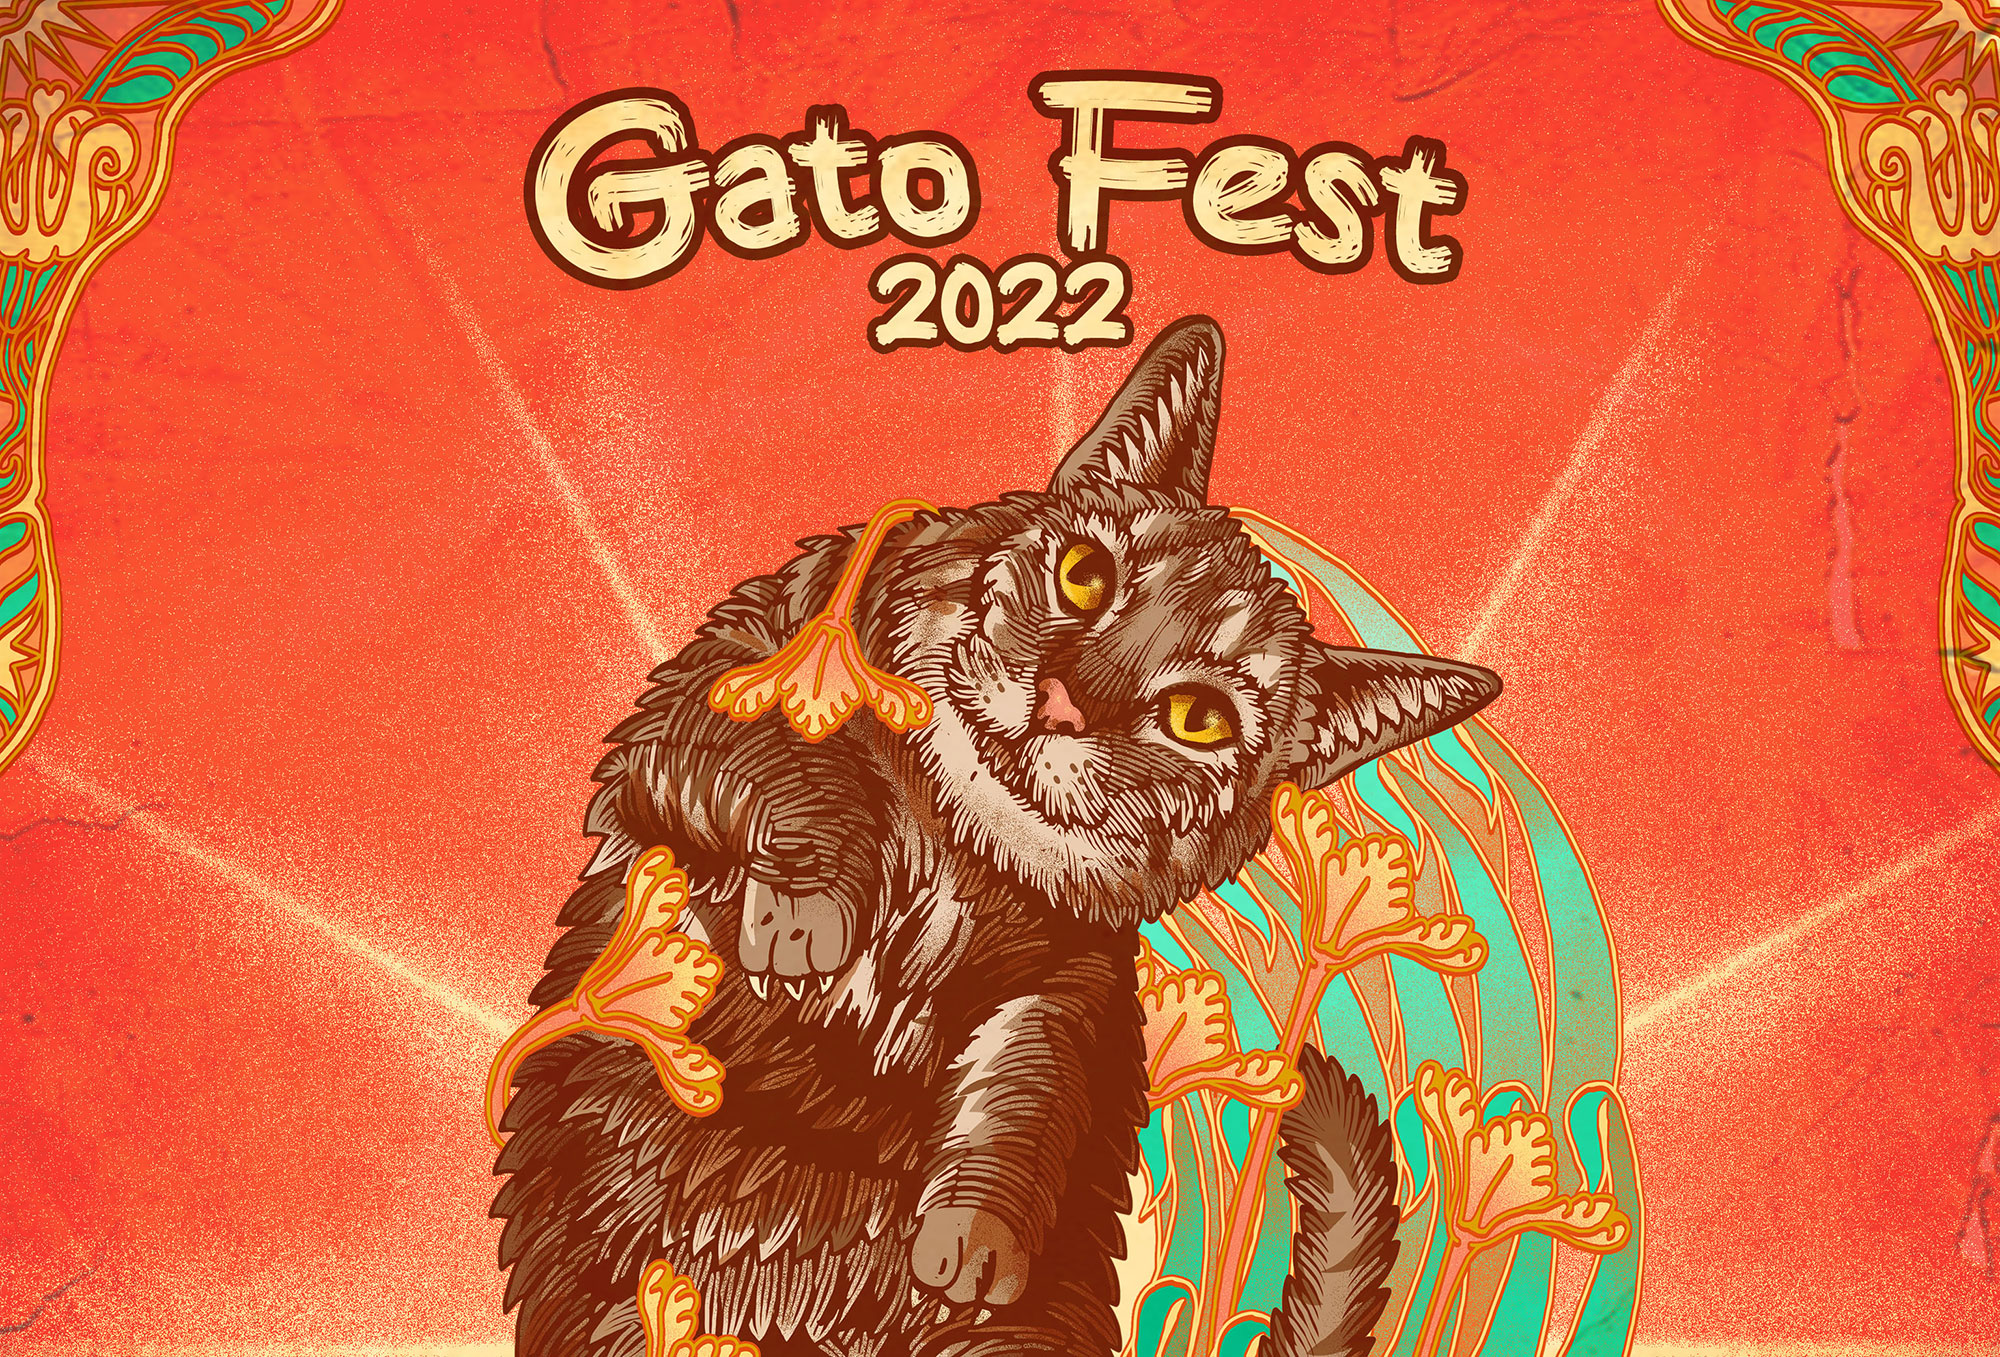 Gato Fest regresa para ayudar a más de 1,500 michis